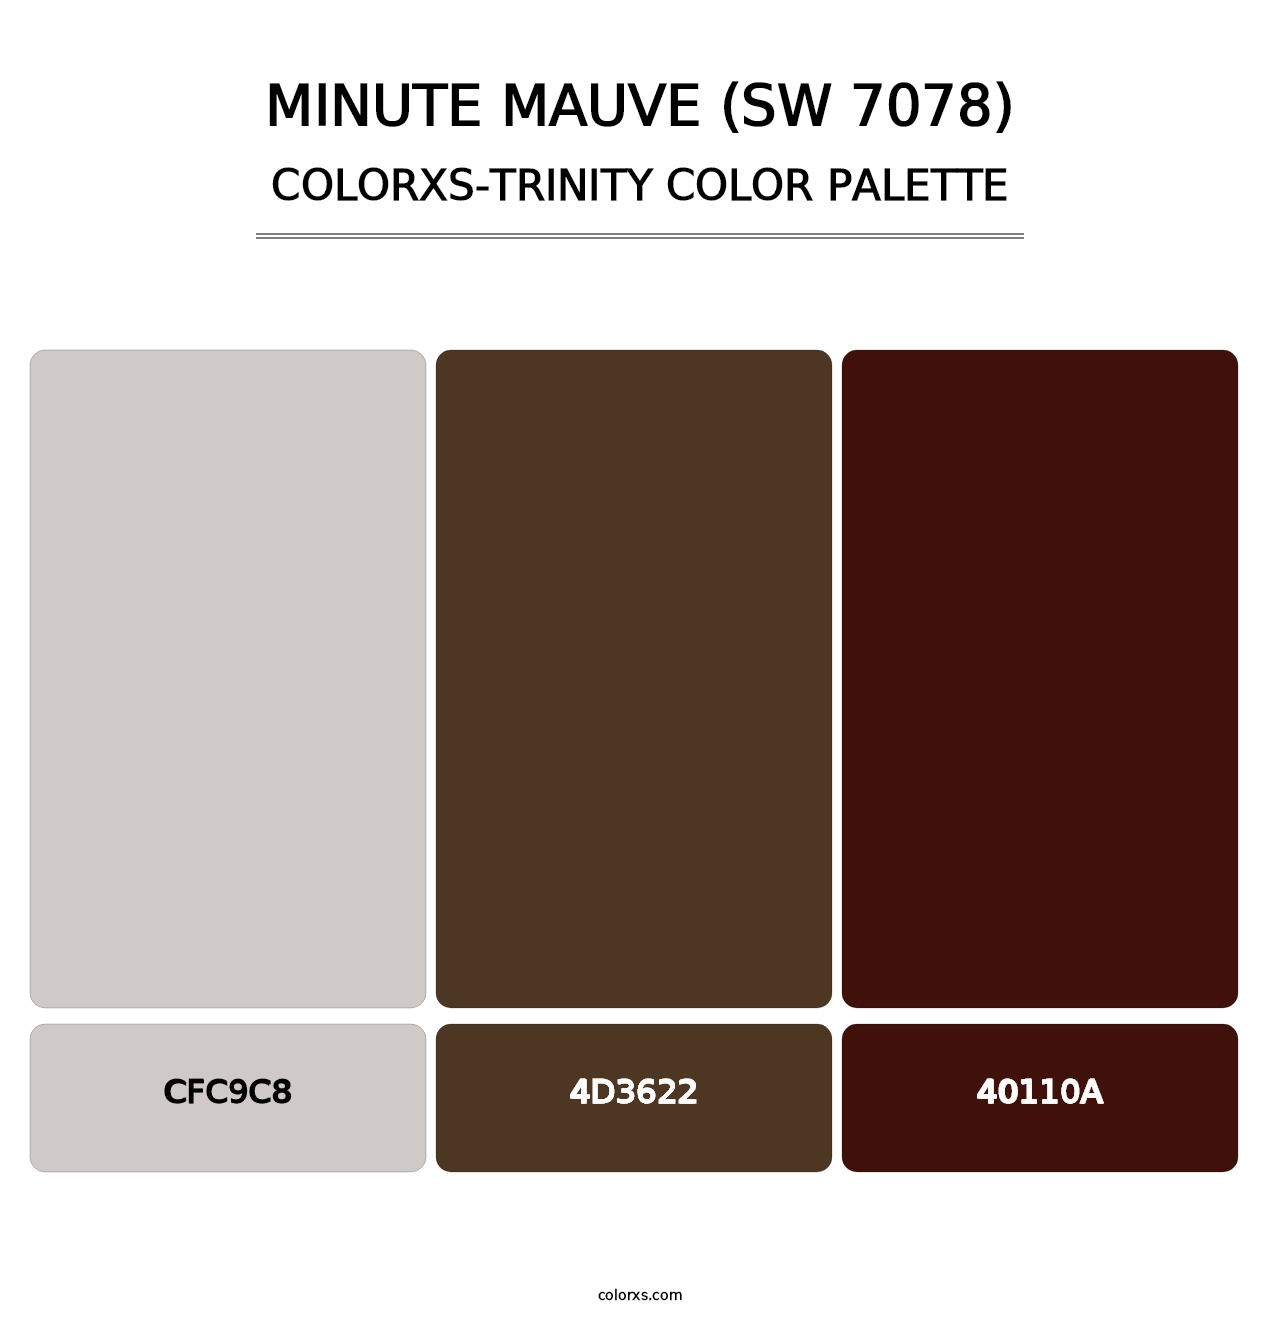 Minute Mauve (SW 7078) - Colorxs Trinity Palette